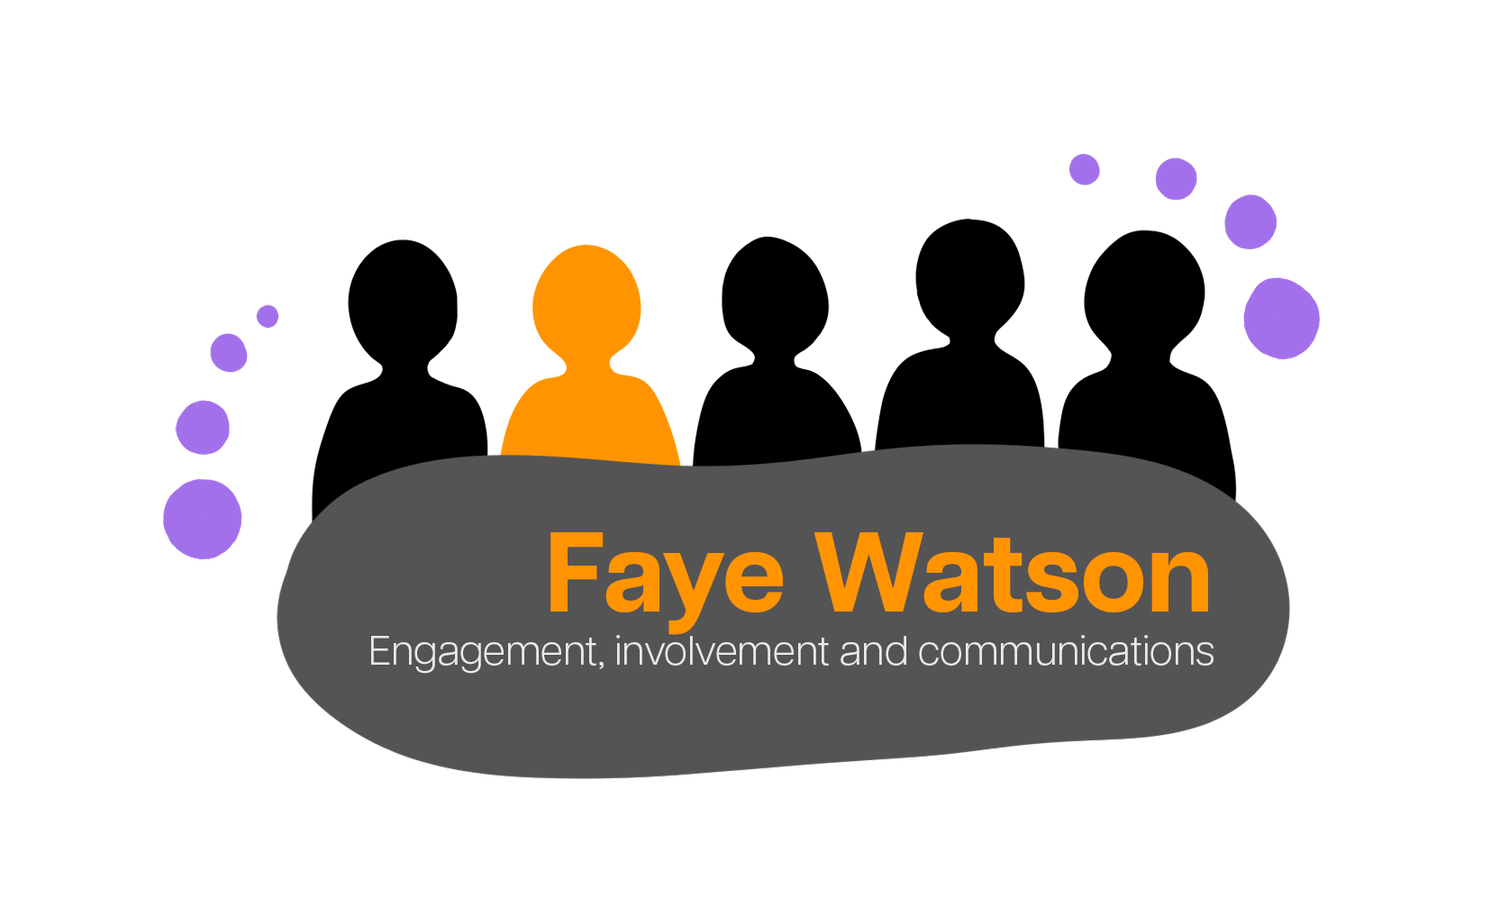 Faye Watson